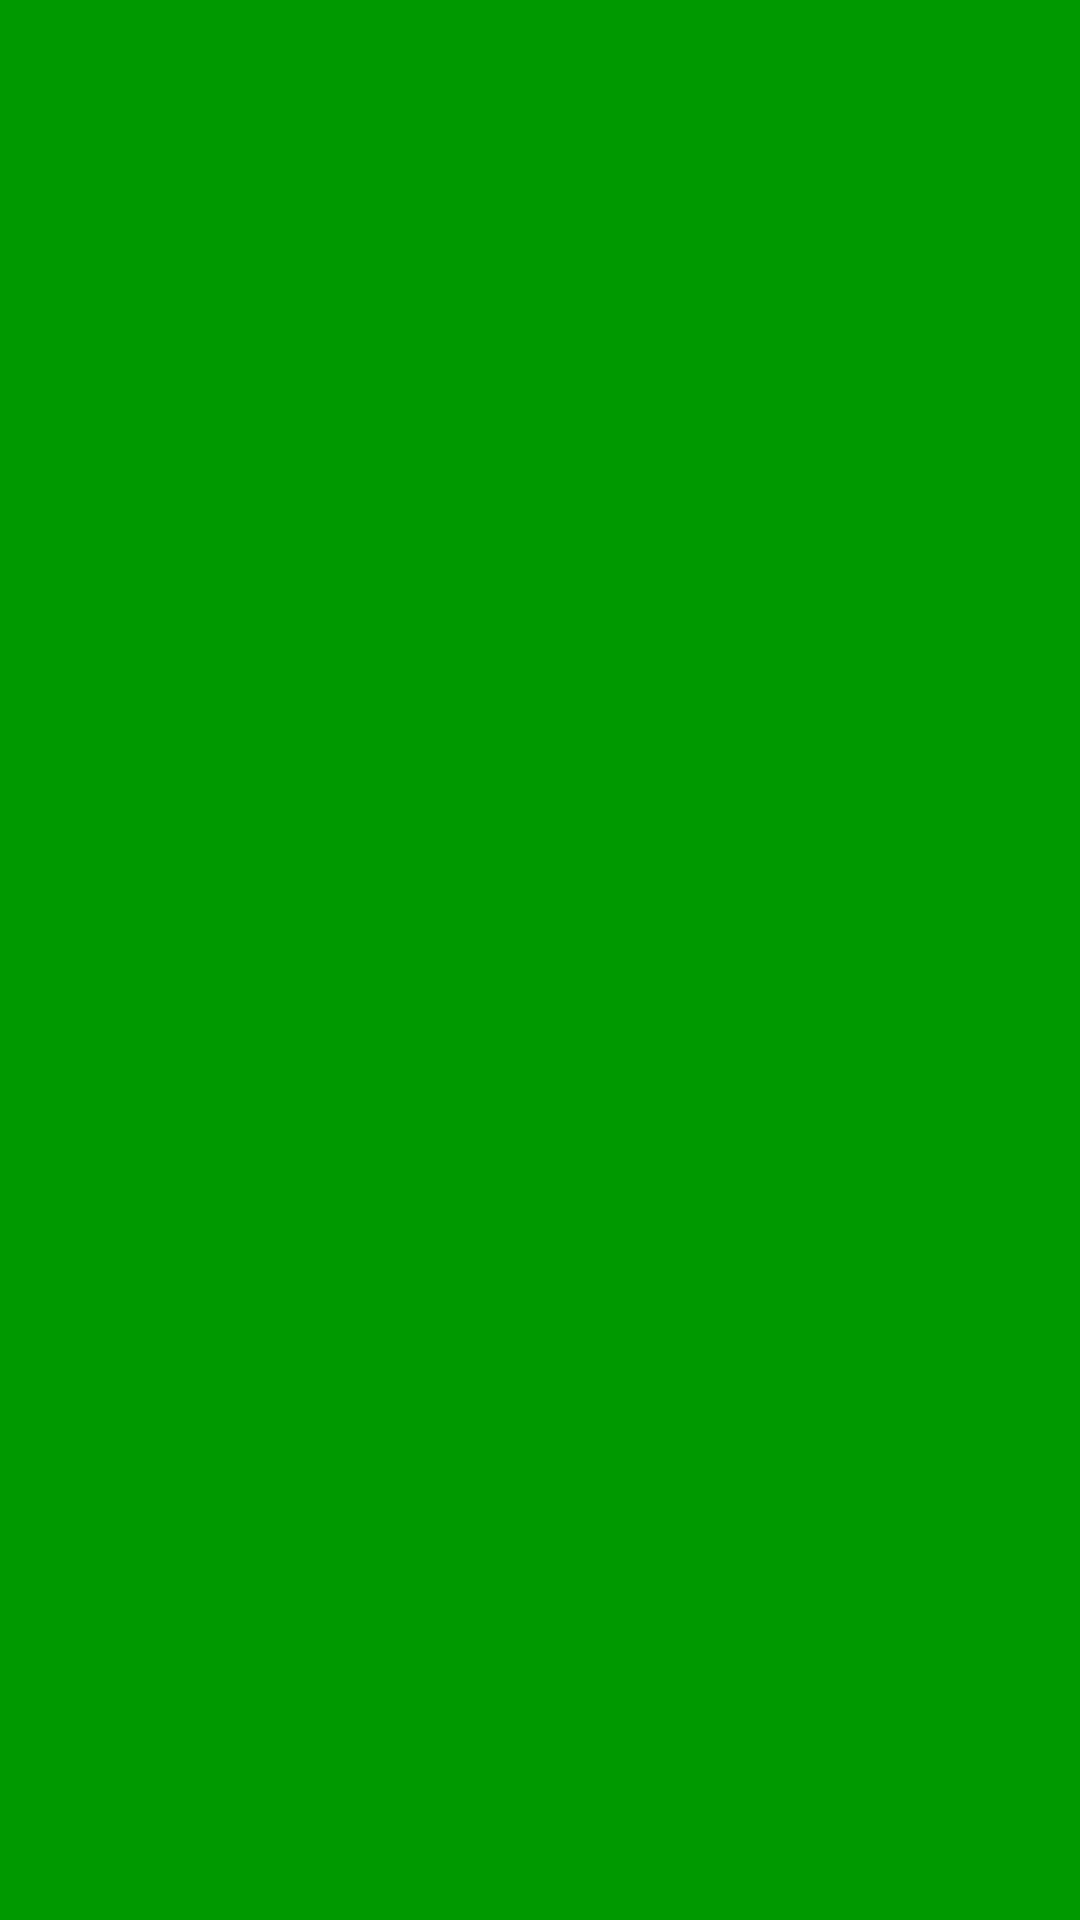 12.574.387 tấm ảnh về màu xanh lá, background cực đẹp cho thiết kế - Mua  bán hình ảnh shutterstock giá rẻ chỉ từ 3.000 đ trong 2 phút